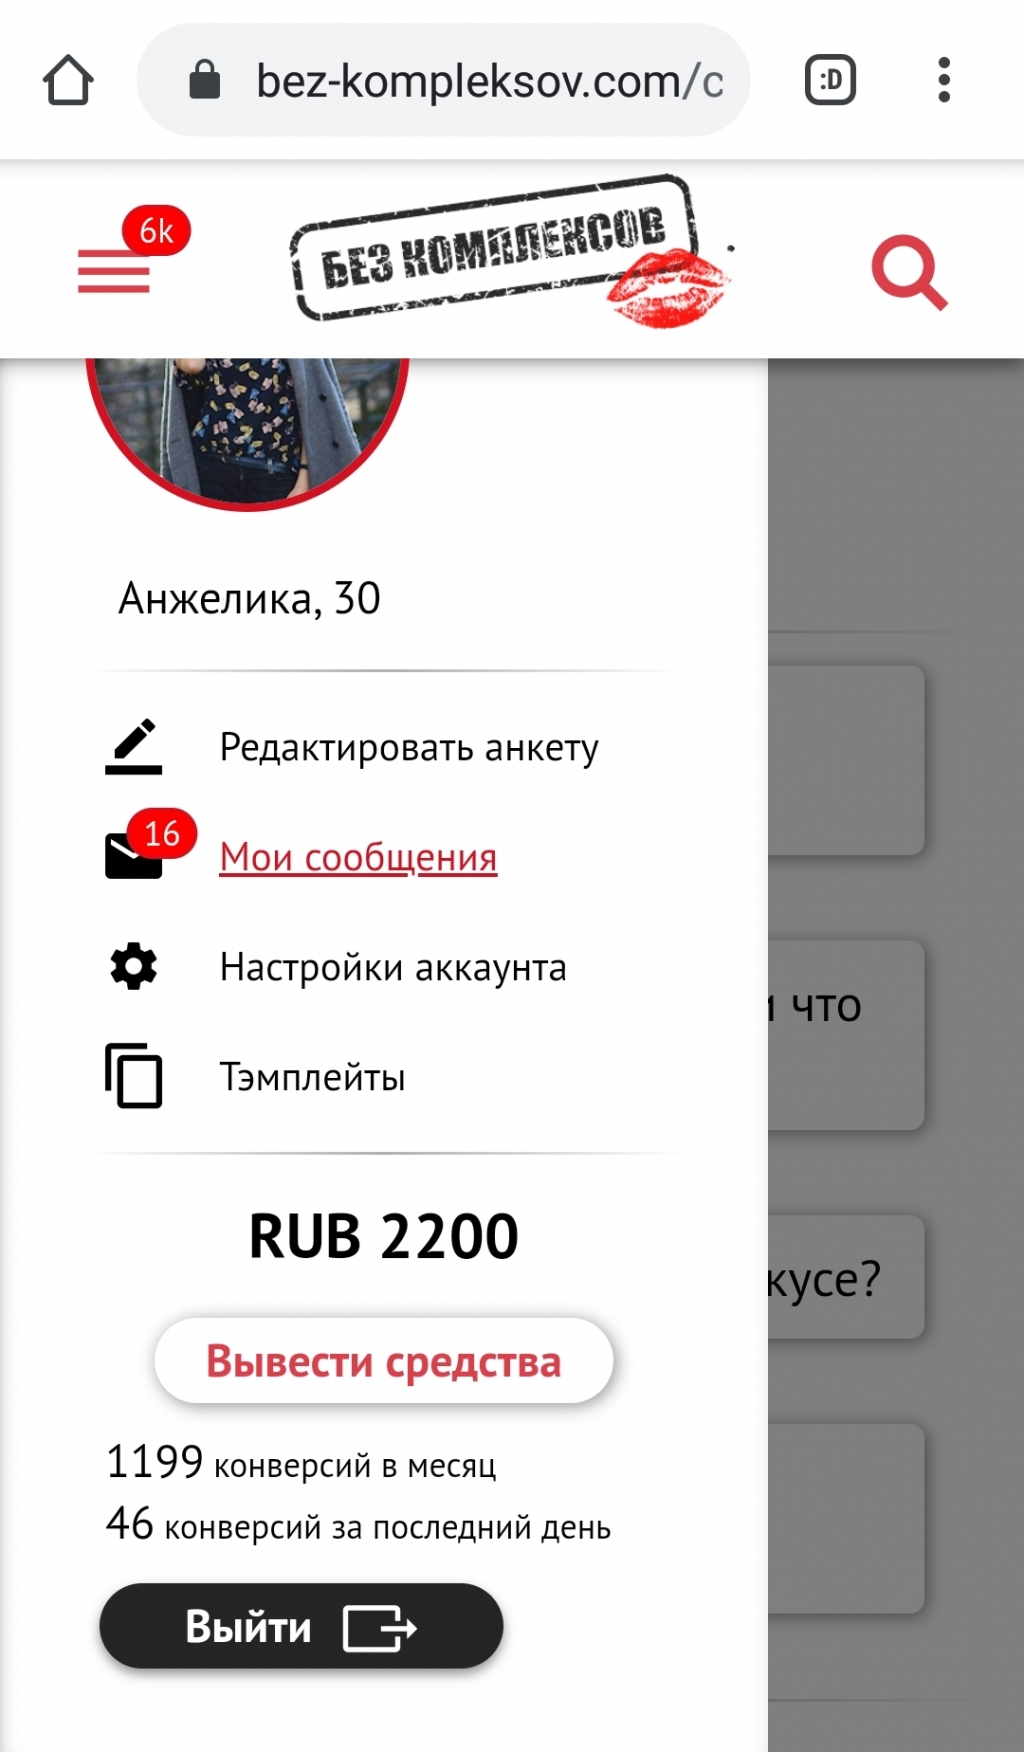 Сайт знакомств без регистрации бесплатно с фото и телефоном в москве для серьезных отношений